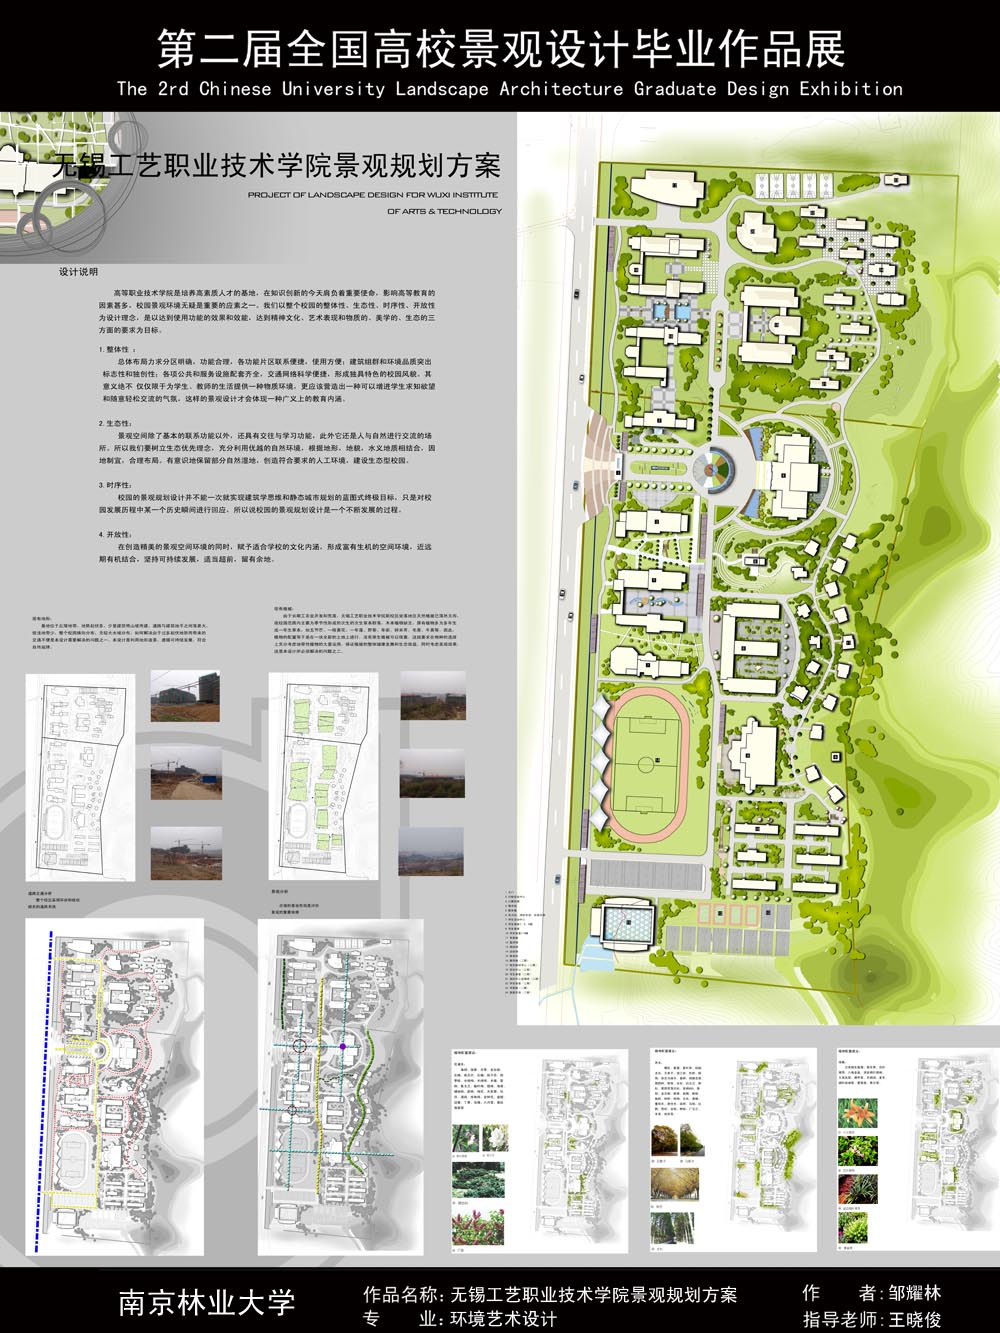 无锡工艺职业技术学院景观规划方案-1